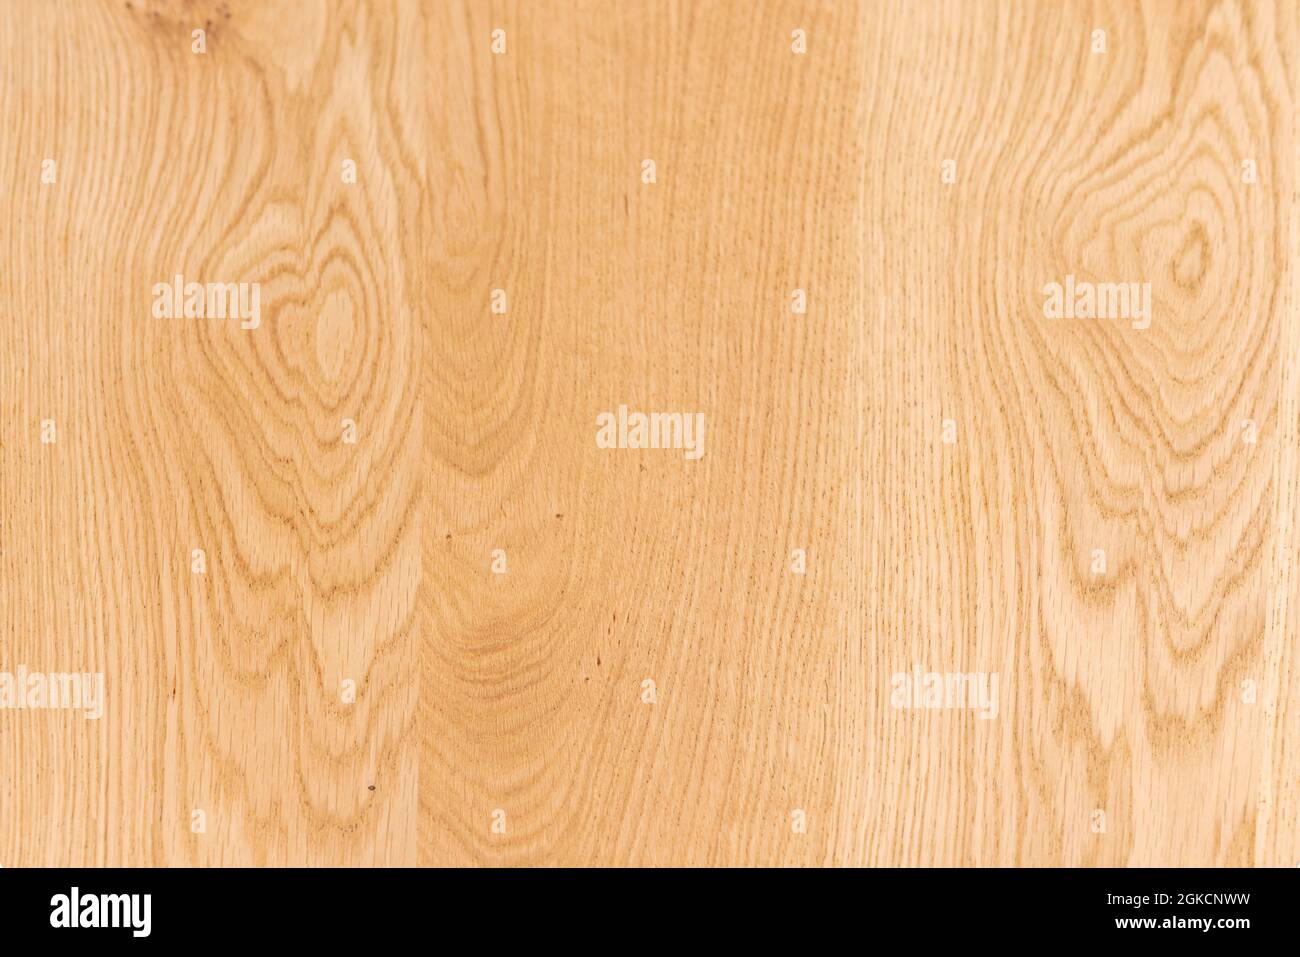 Fondo in legno di quercia verniciato in toni chiari che ne mostrano le belle vene. Vettori di tessitura del legno chiaro per lo sfondo. Foto Stock